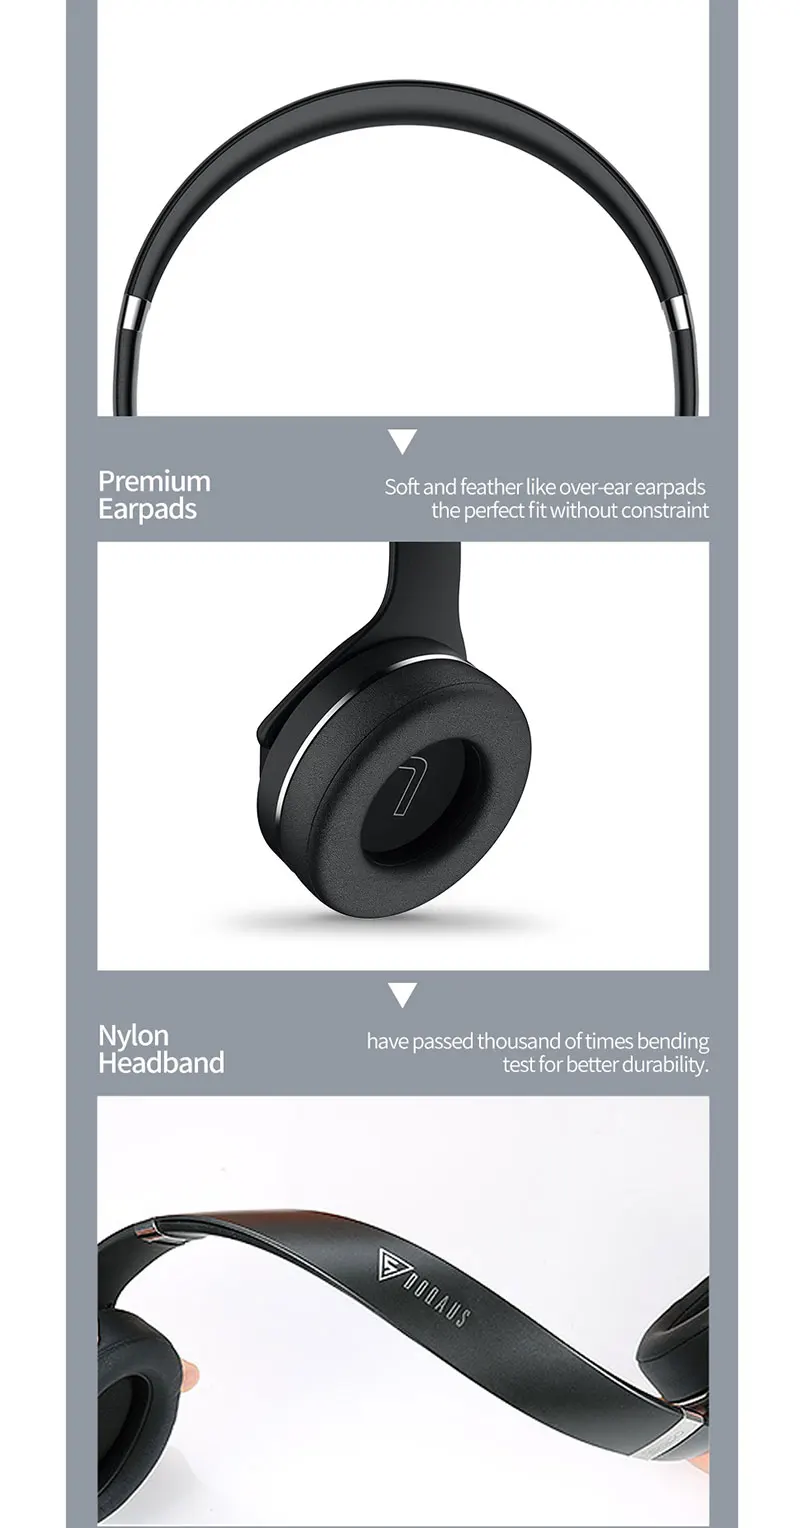 Bluetooth наушники и Динамик 2-в-1 внешний Динамик s и Earphonen Складная Беспроводной стерео аудио гарнитуры для IOS и Android